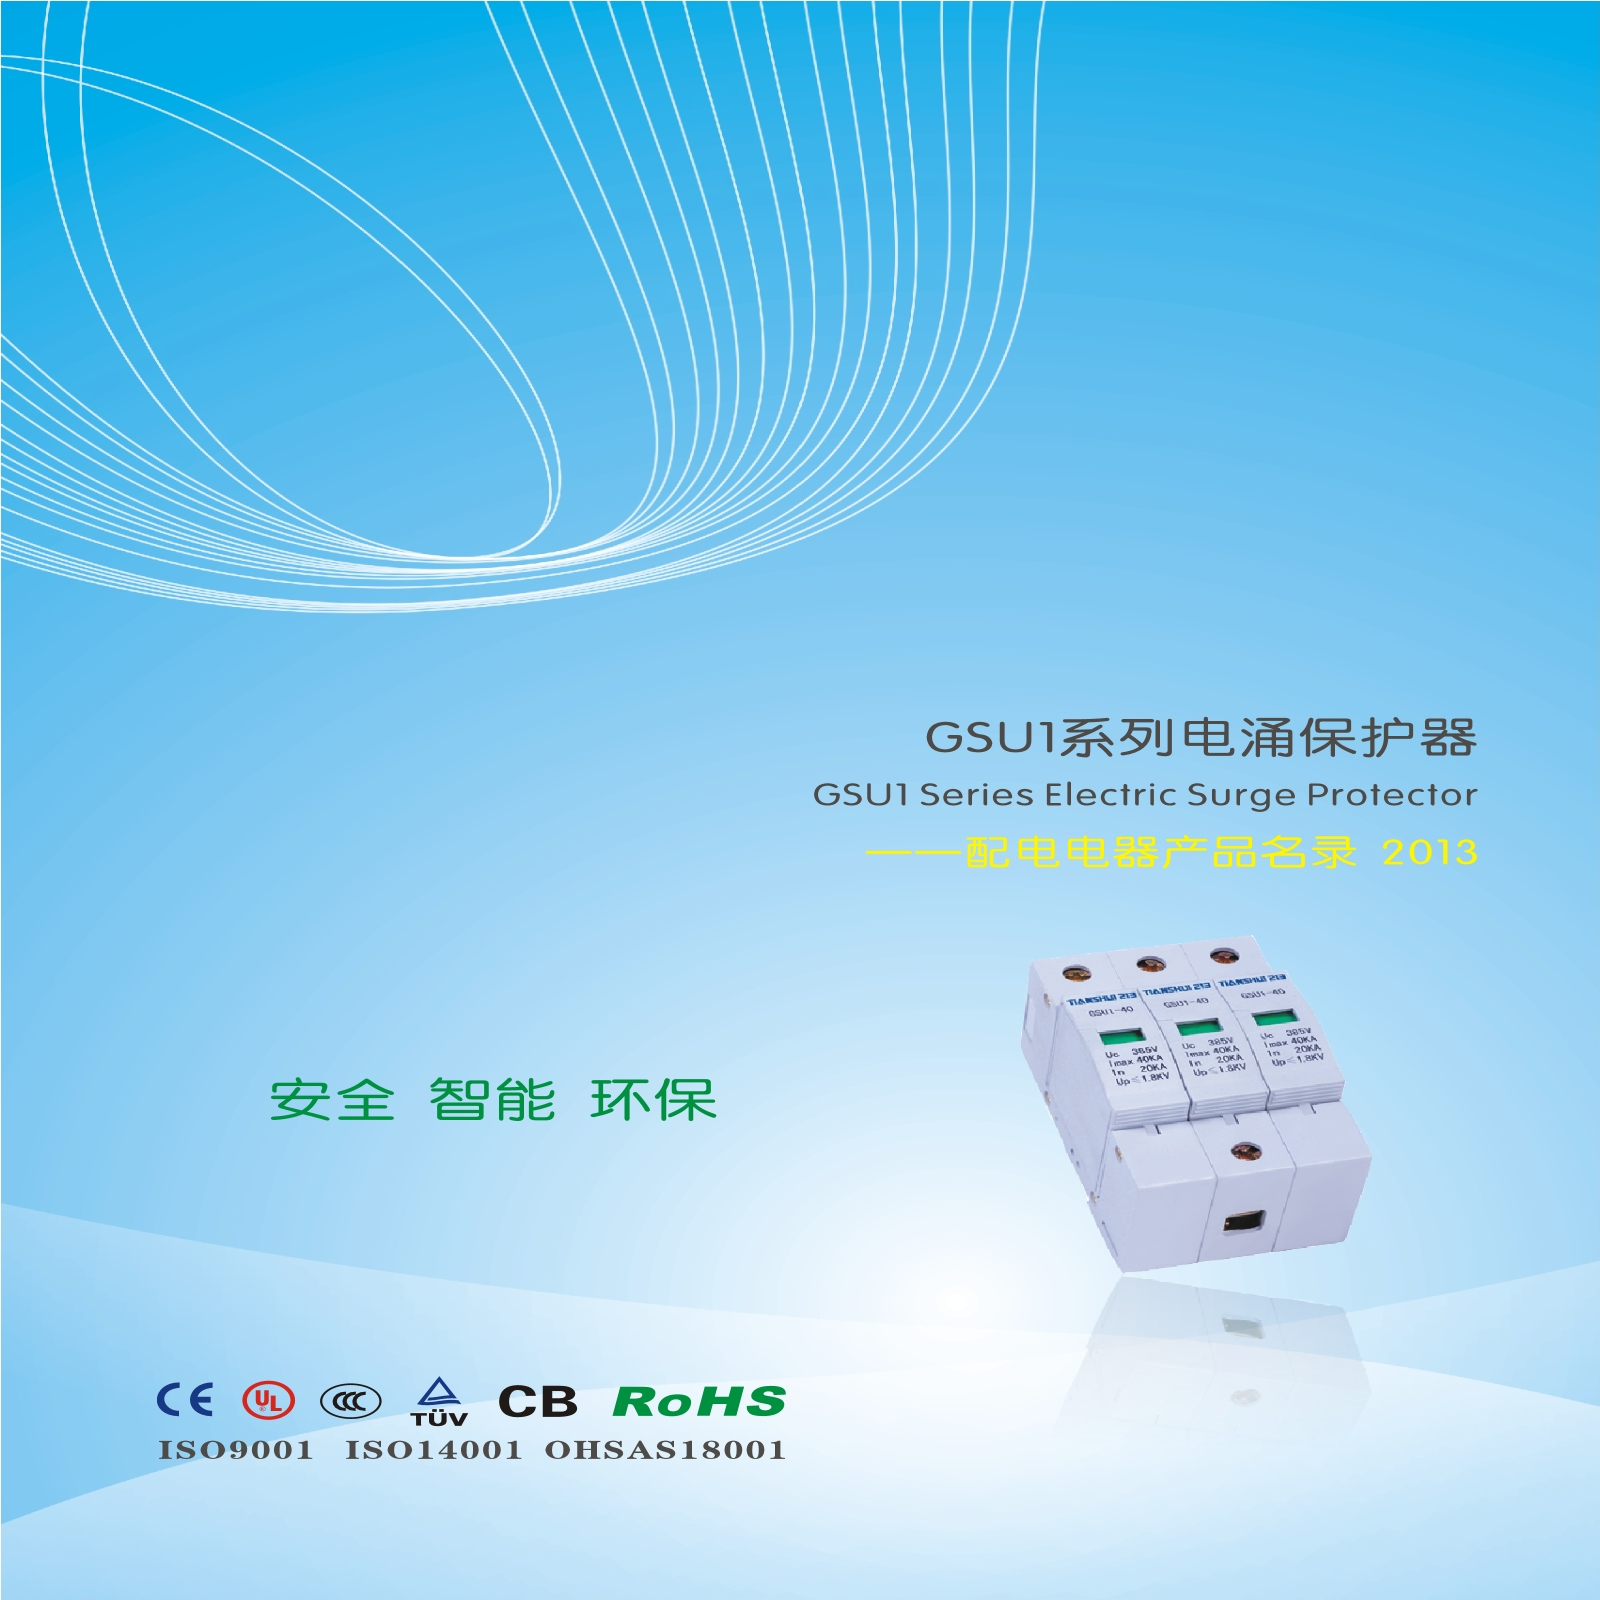 GSU1系列电涌保护器